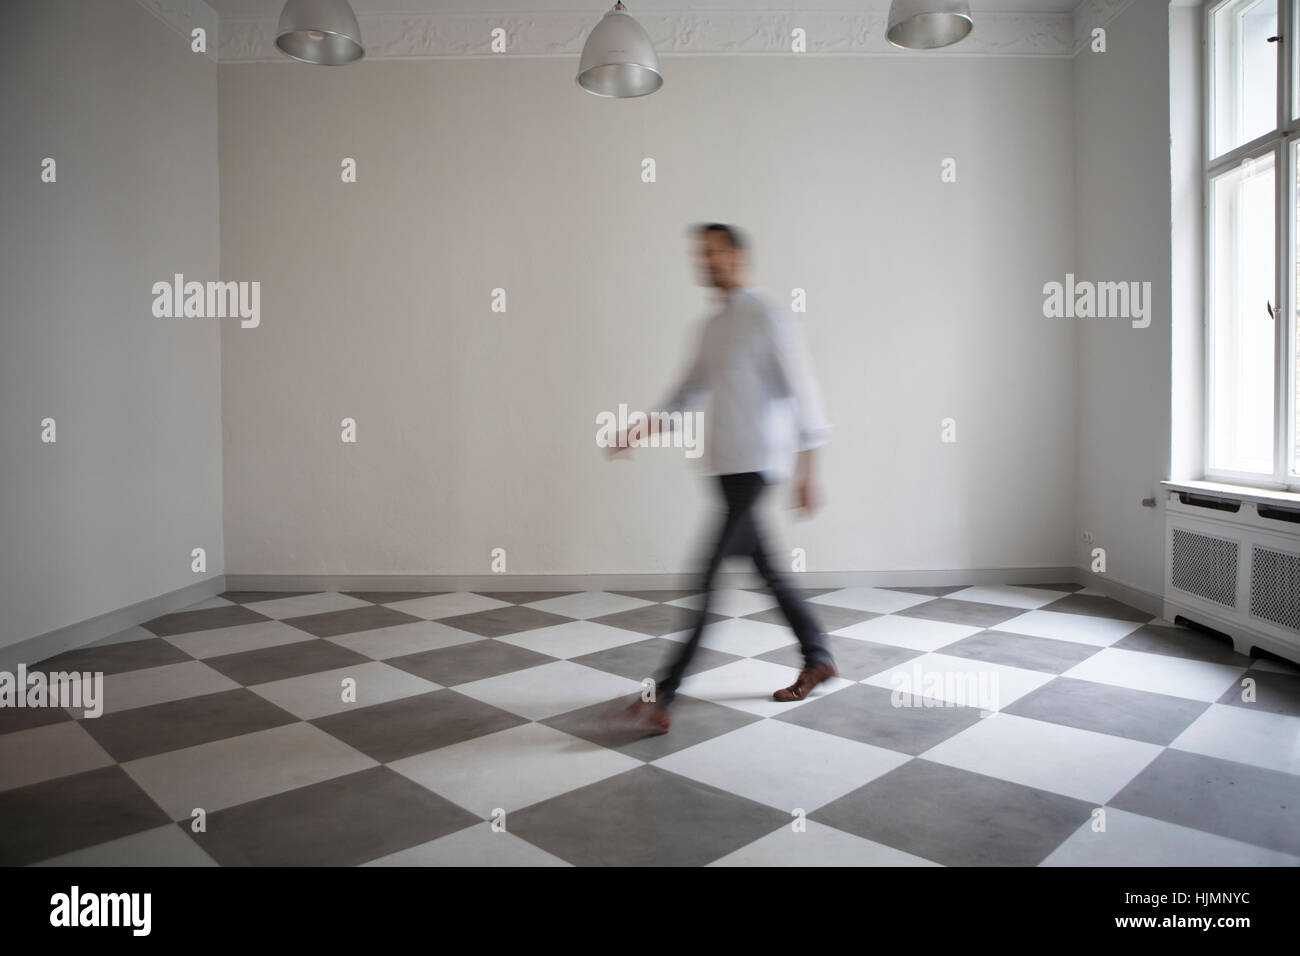 Man crossing salle vide d'un appartement Banque D'Images